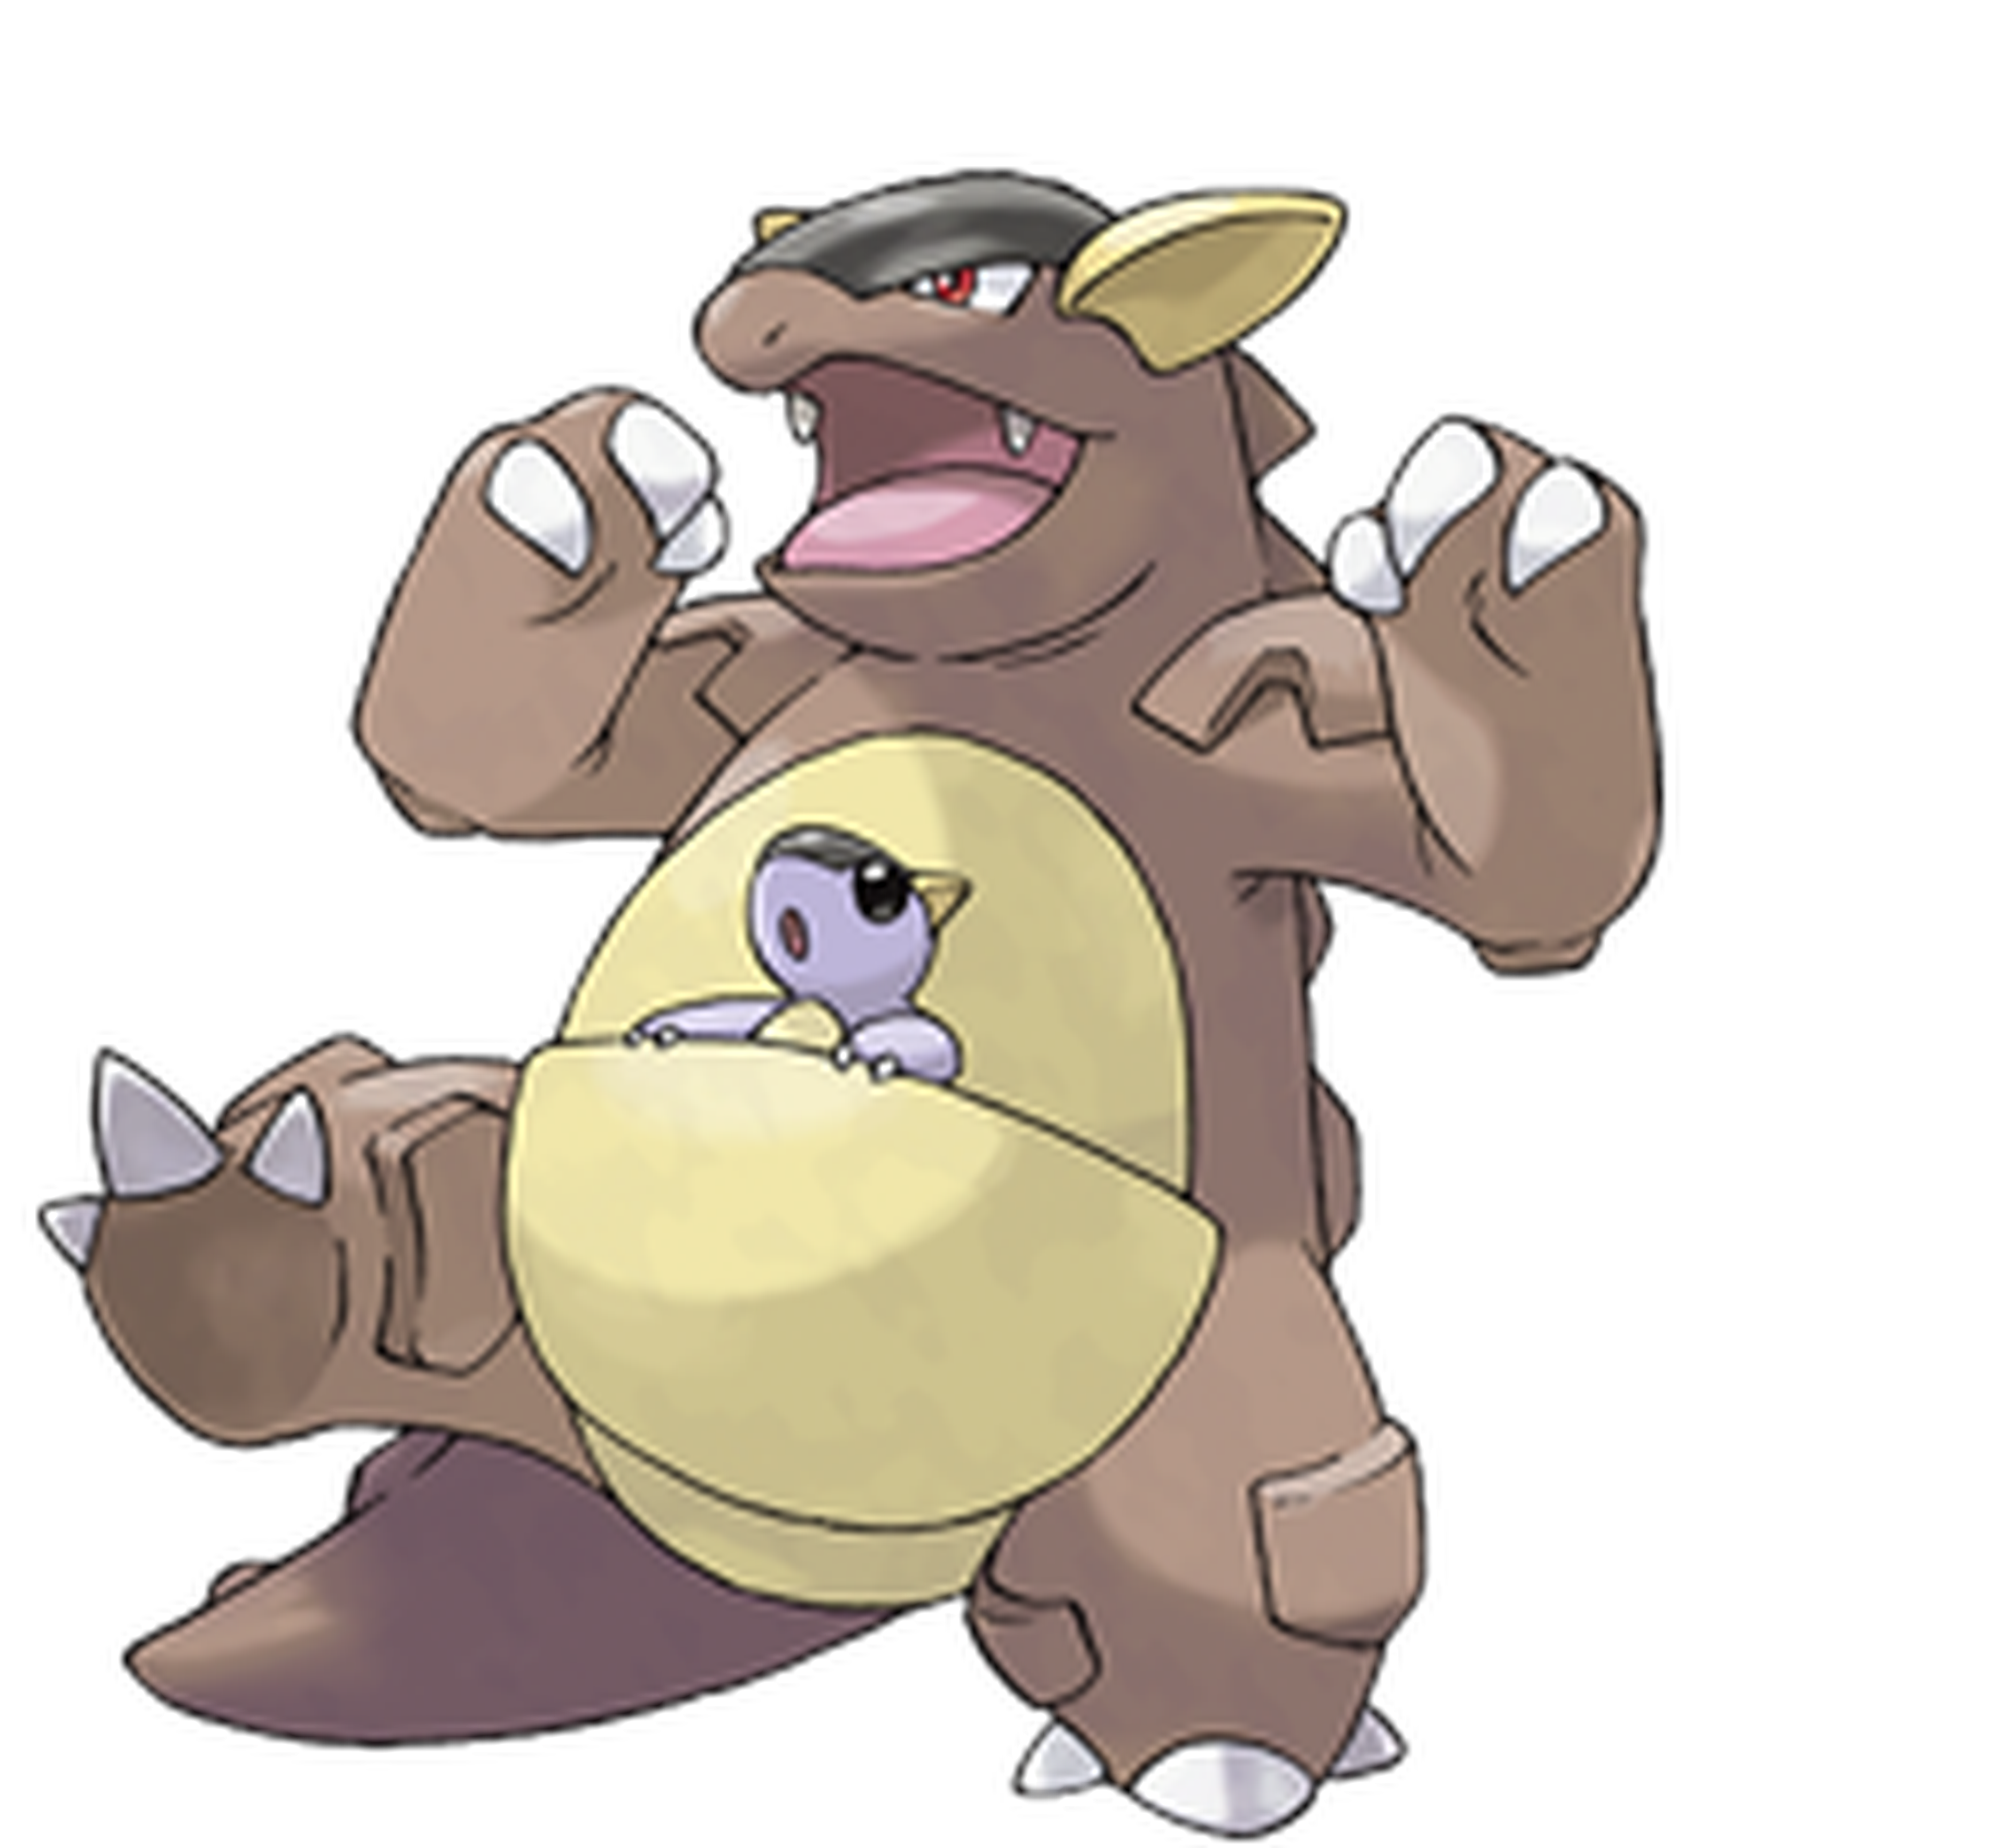 Kangaskhan megaevoluciona en Pokémon X/Y